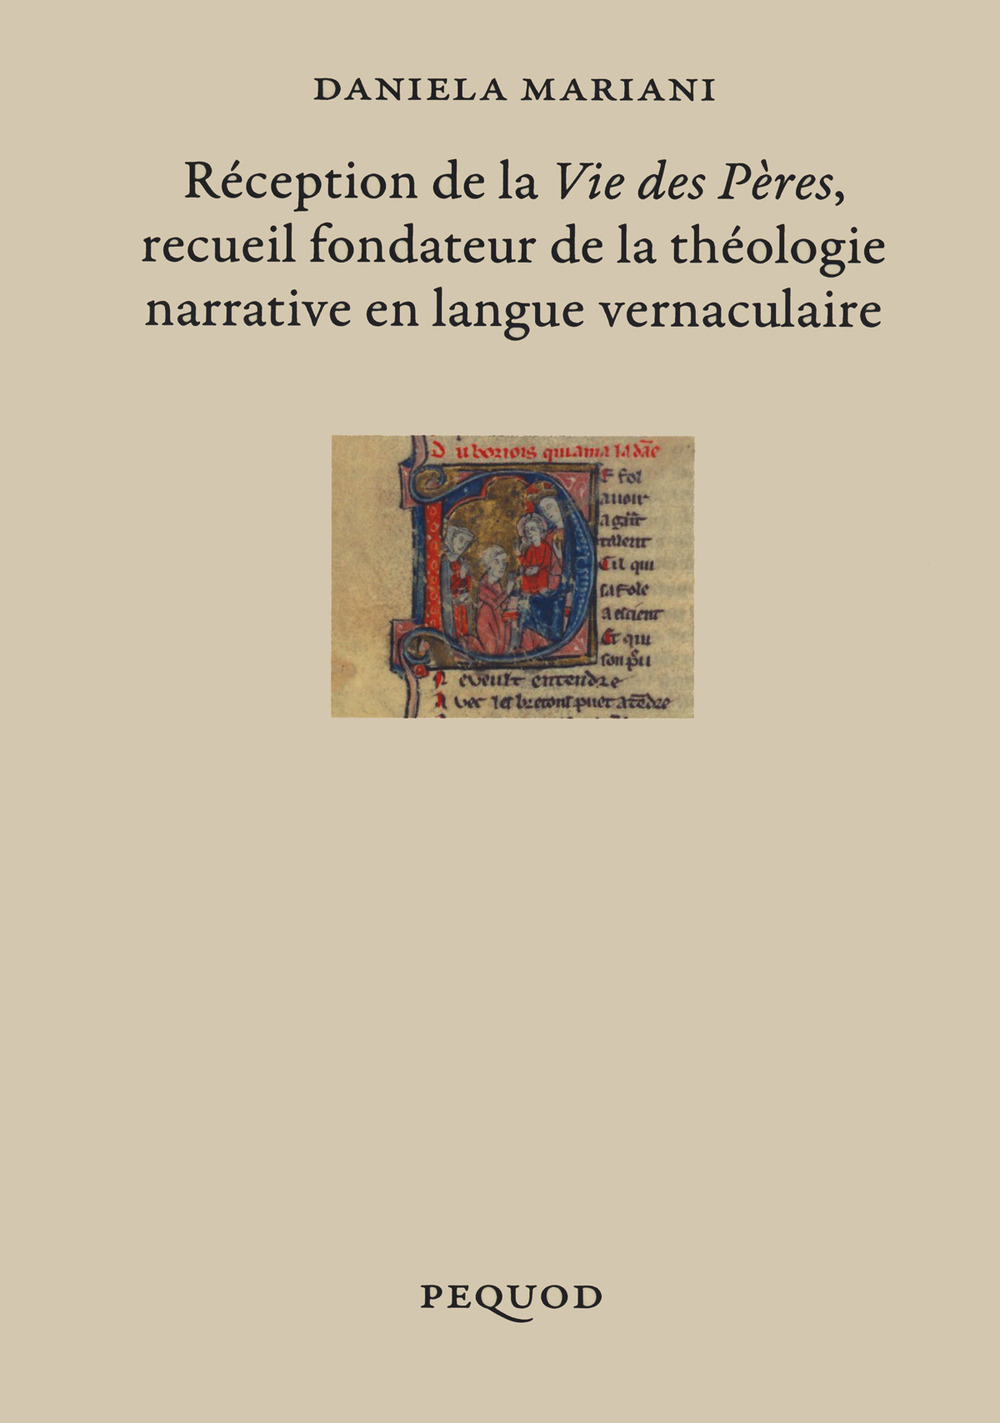 Réception de la «Vie des Pères» recueil fondateur de la théologie narrative en langue vernaculaire